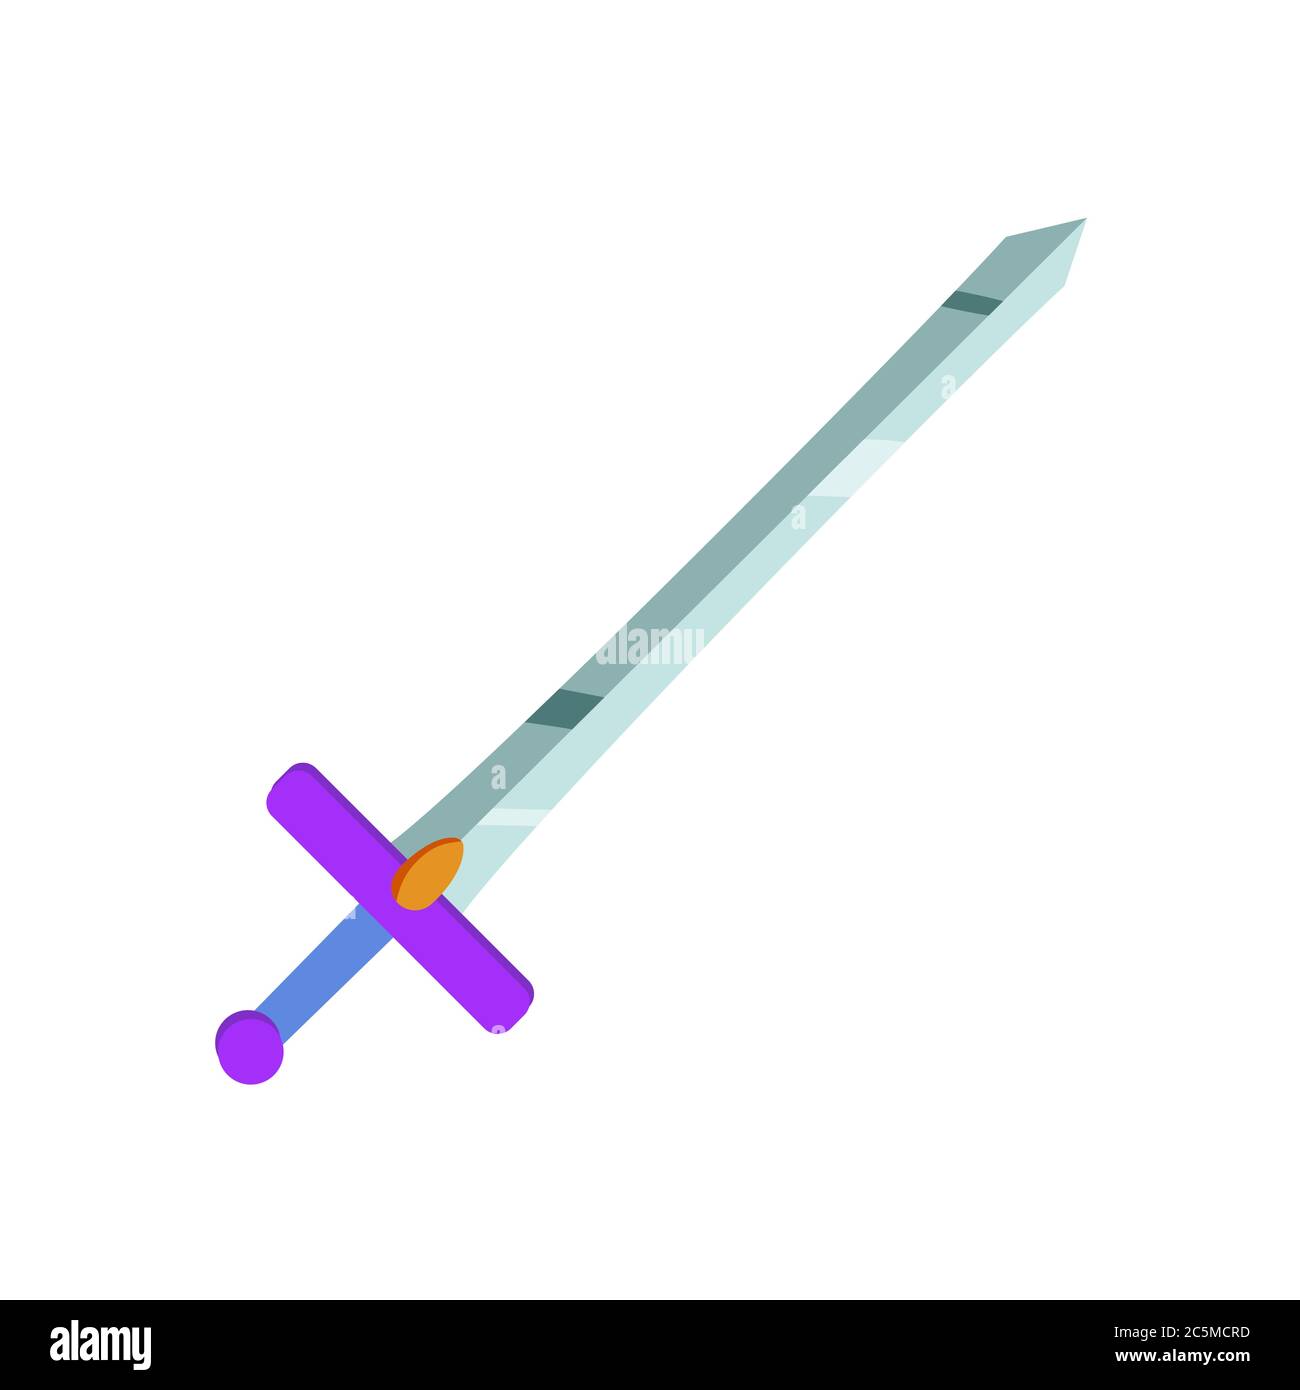 Sword on white background. Vector illustration EPS 10. Stock Vector